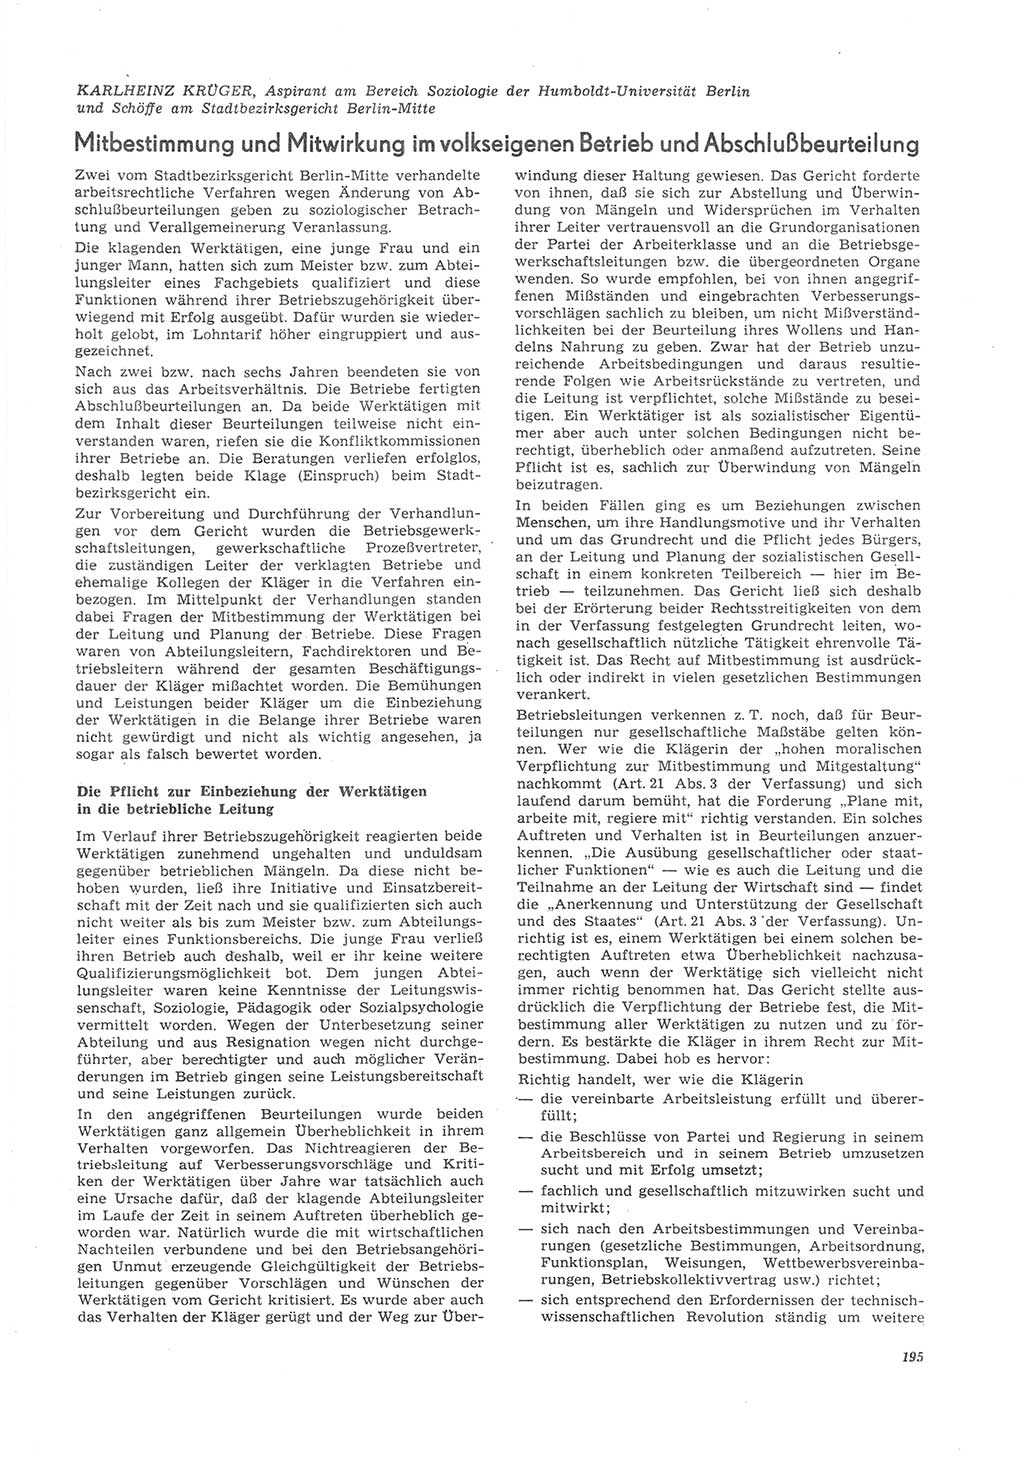 Neue Justiz (NJ), Zeitschrift für Recht und Rechtswissenschaft [Deutsche Demokratische Republik (DDR)], 26. Jahrgang 1972, Seite 195 (NJ DDR 1972, S. 195)